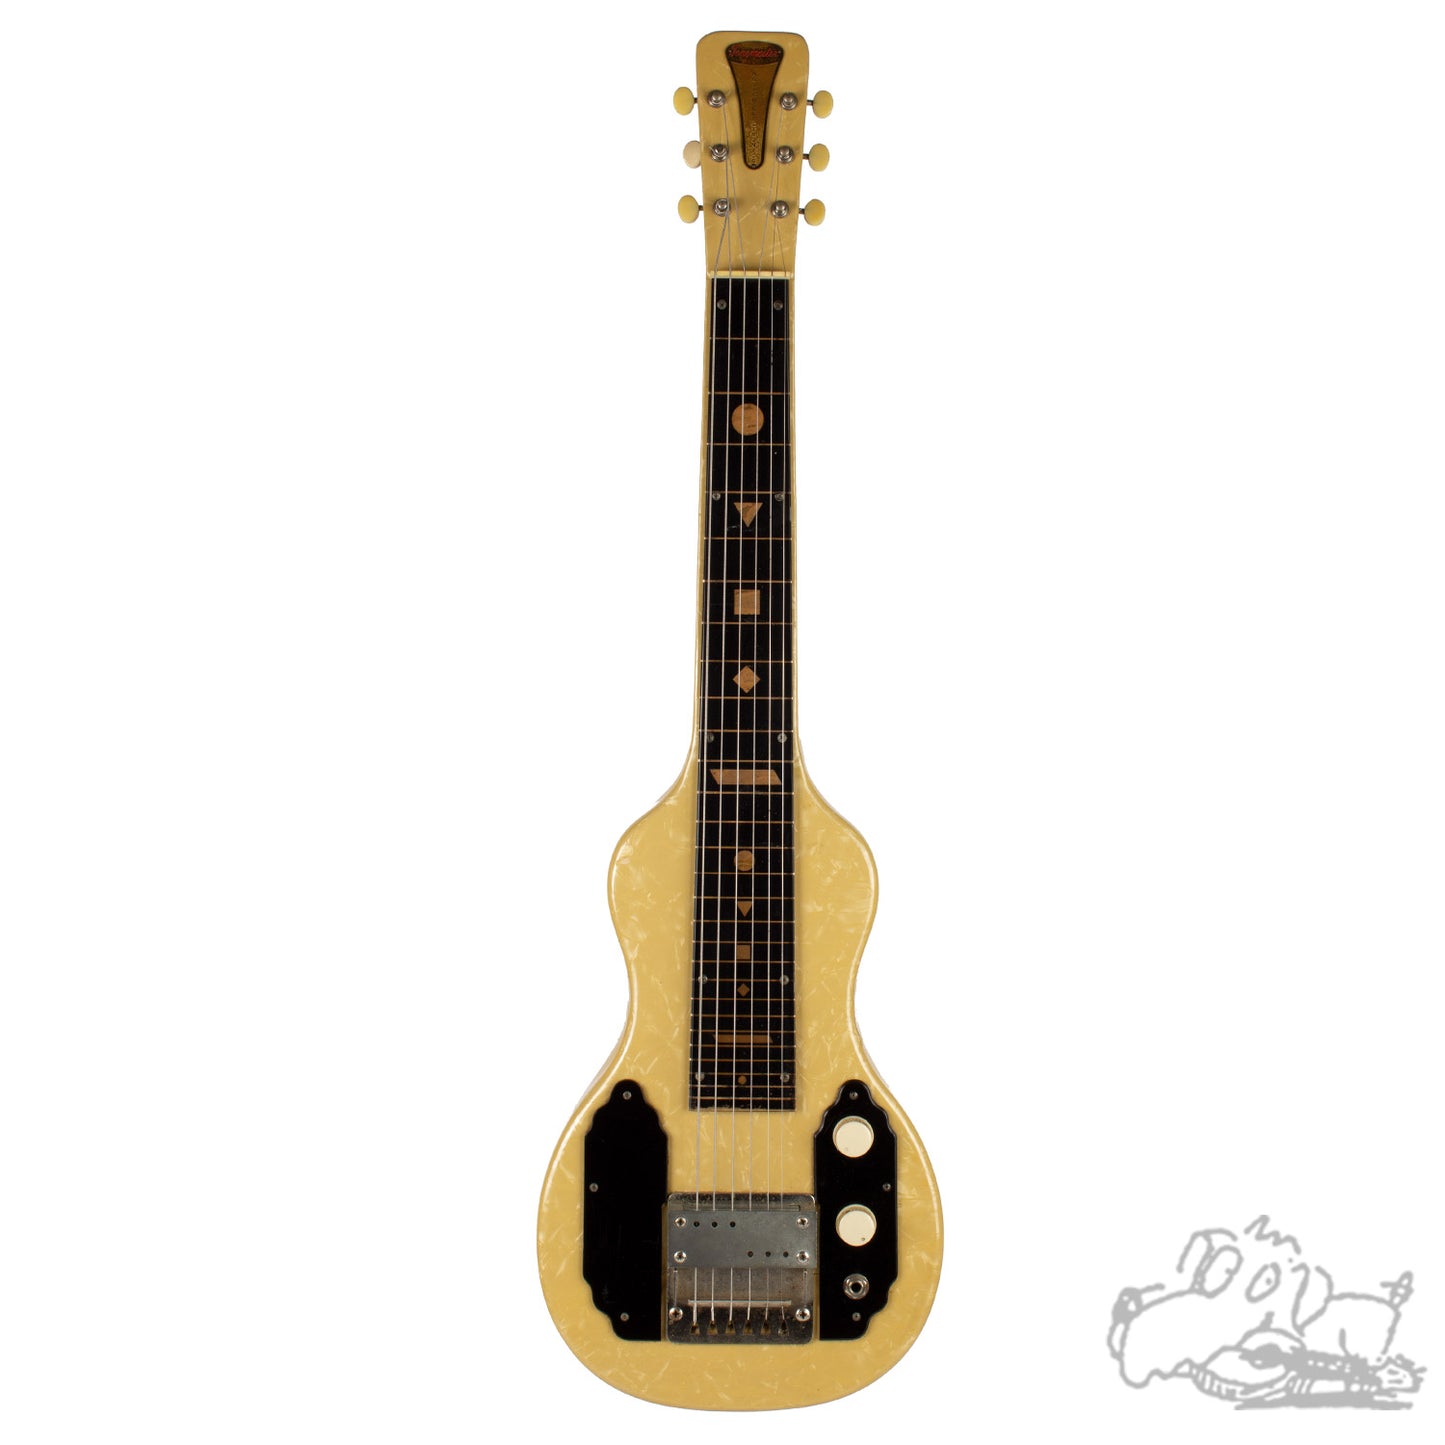 1958 English Tonemaster Lap Steel Guitar